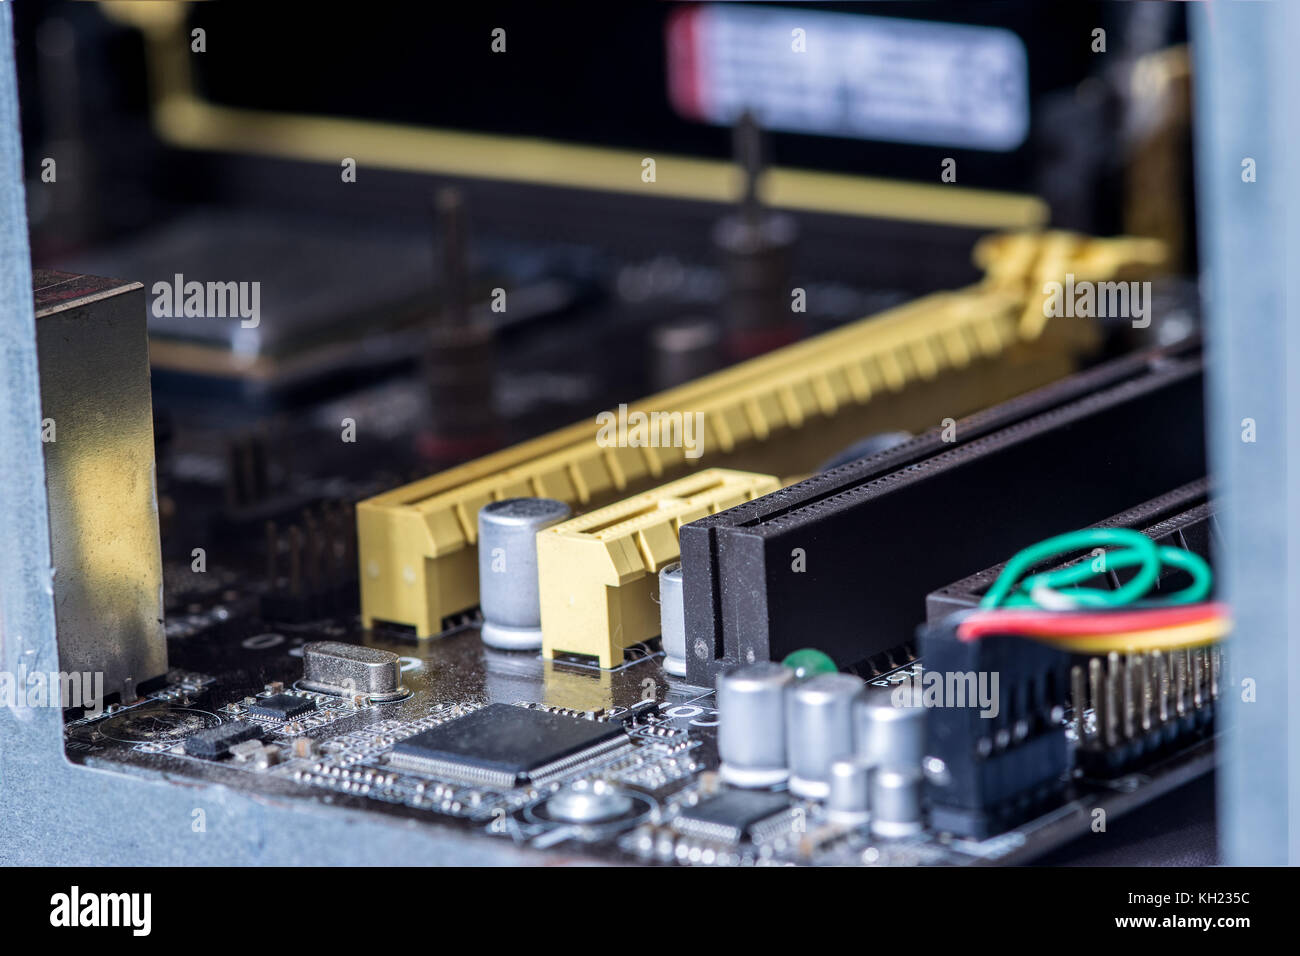 Computer motherboard PCI slots, capacitors and transistors, closeup Stock Photo